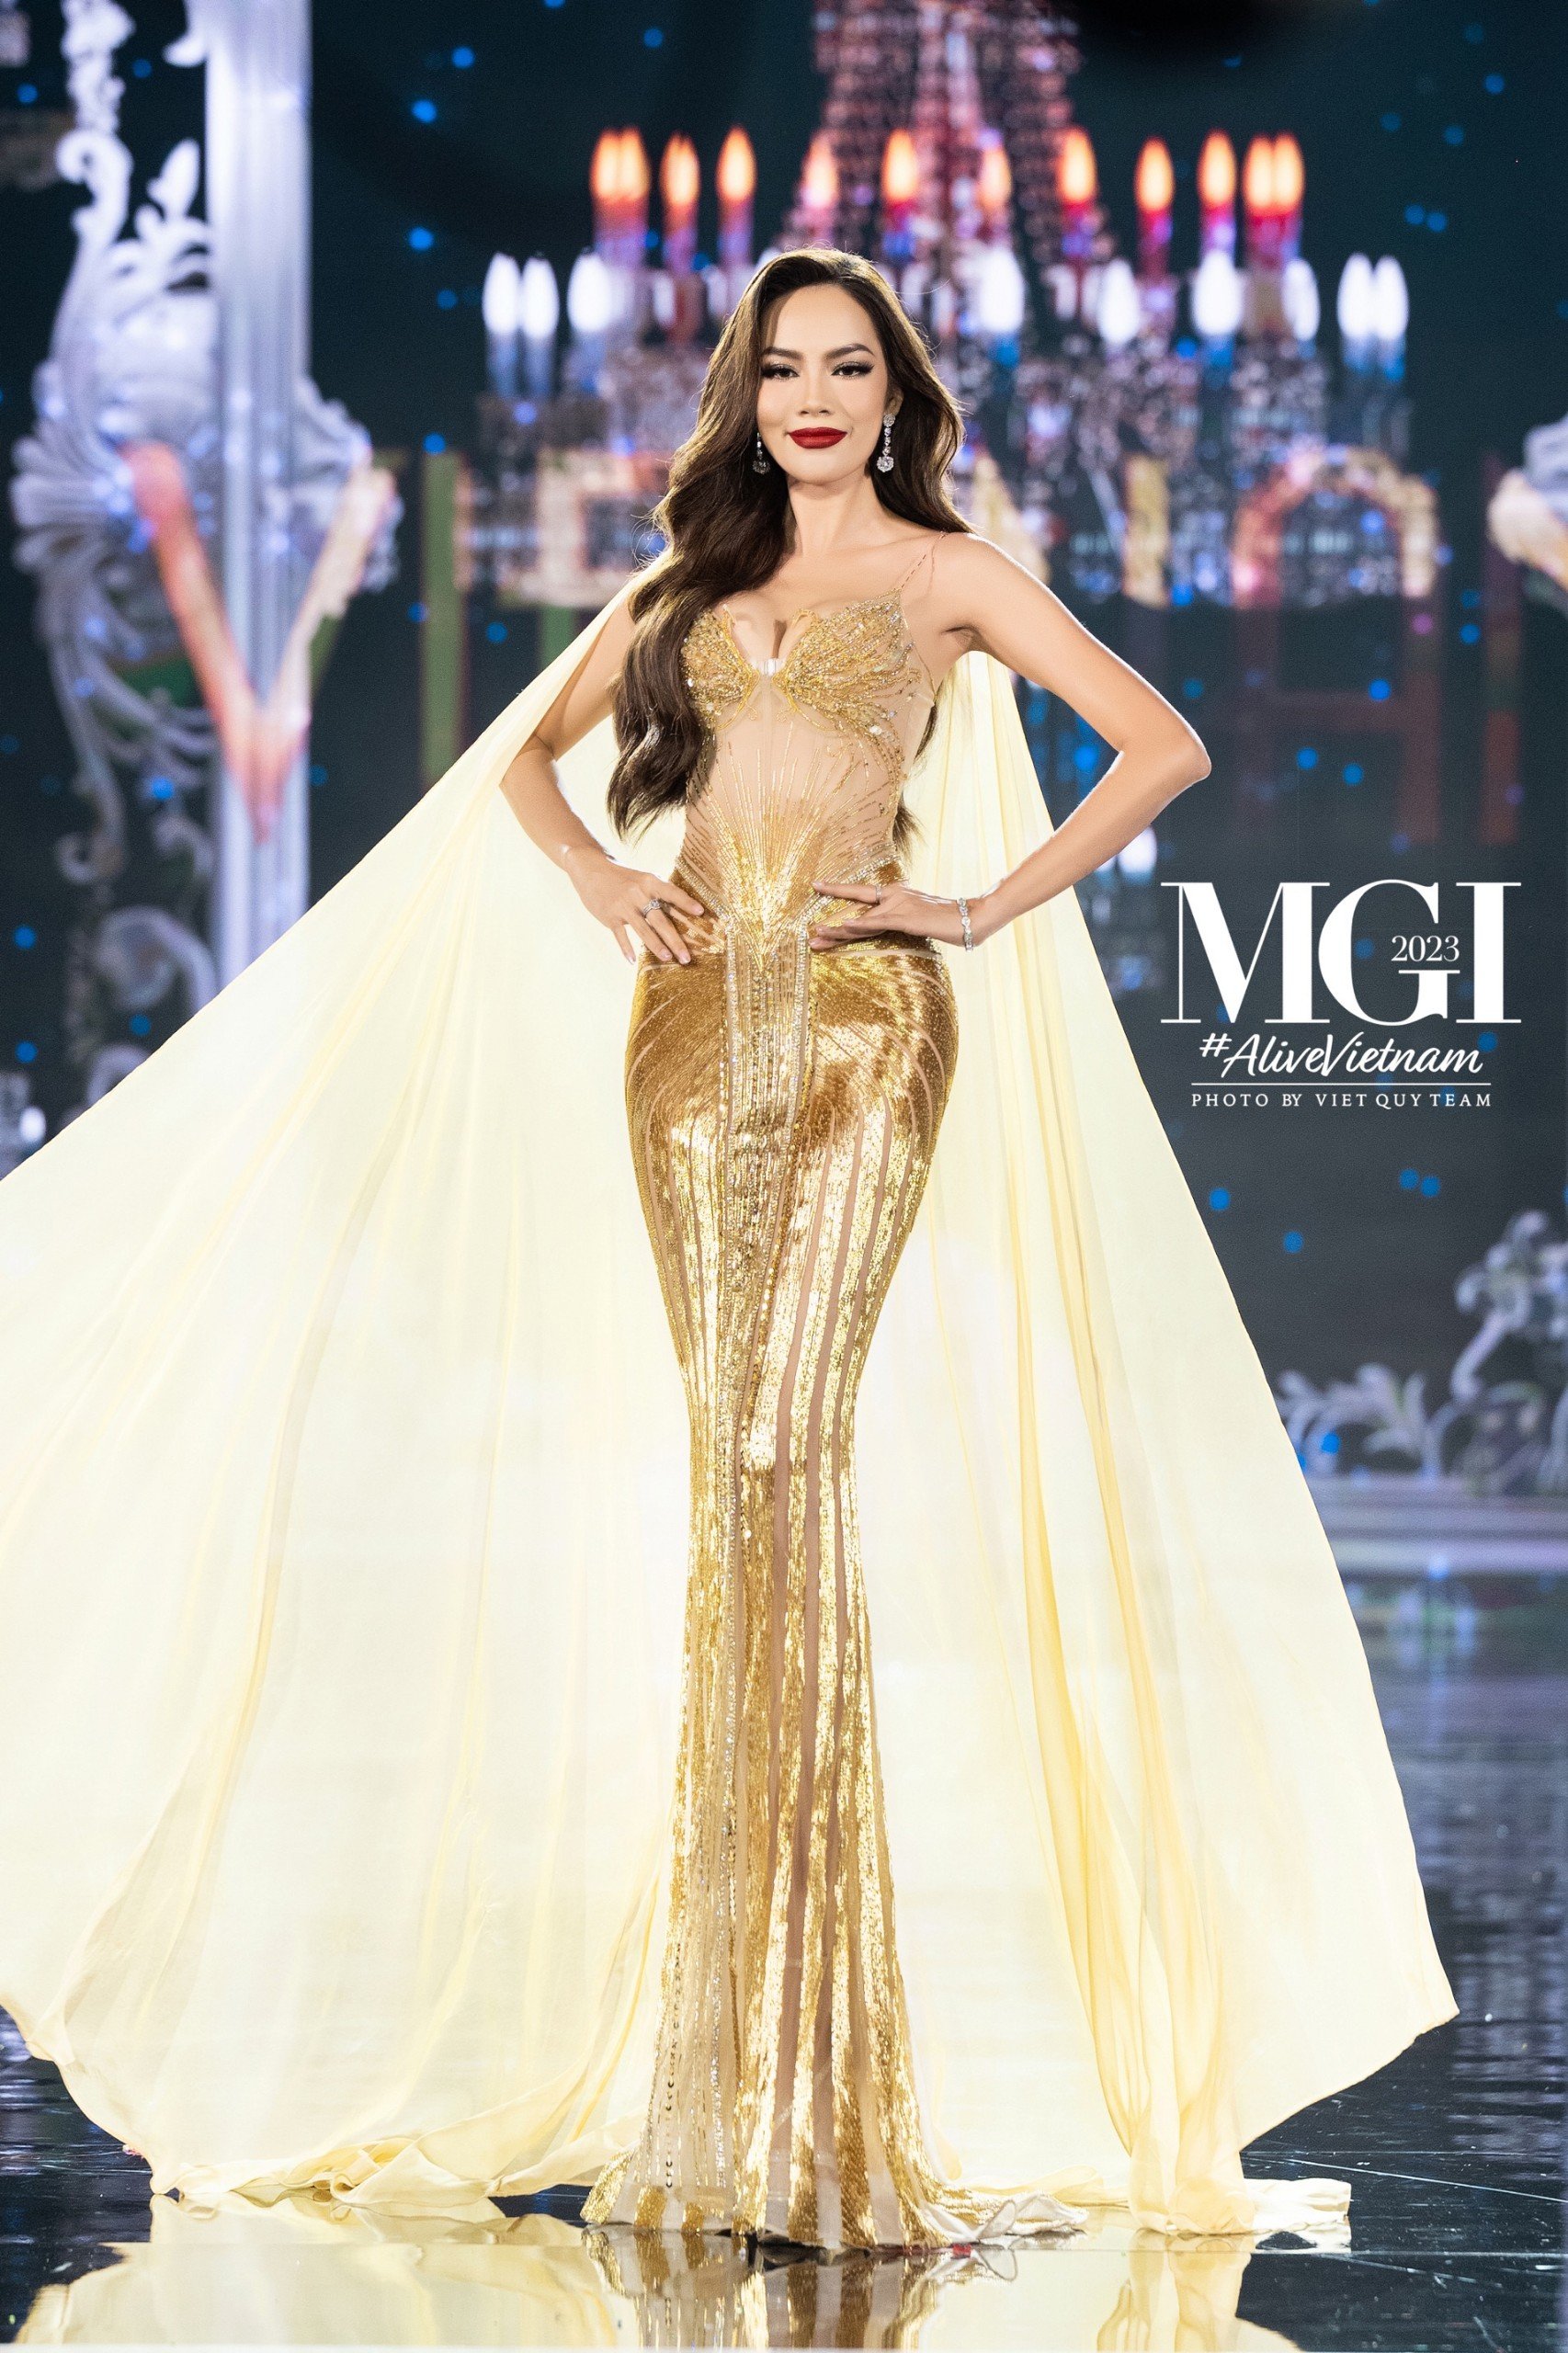 Phía Miss Grand Vietnam trả lời đã hoàn thiện nội dung hợp đồng với Nam An - Ảnh 3.